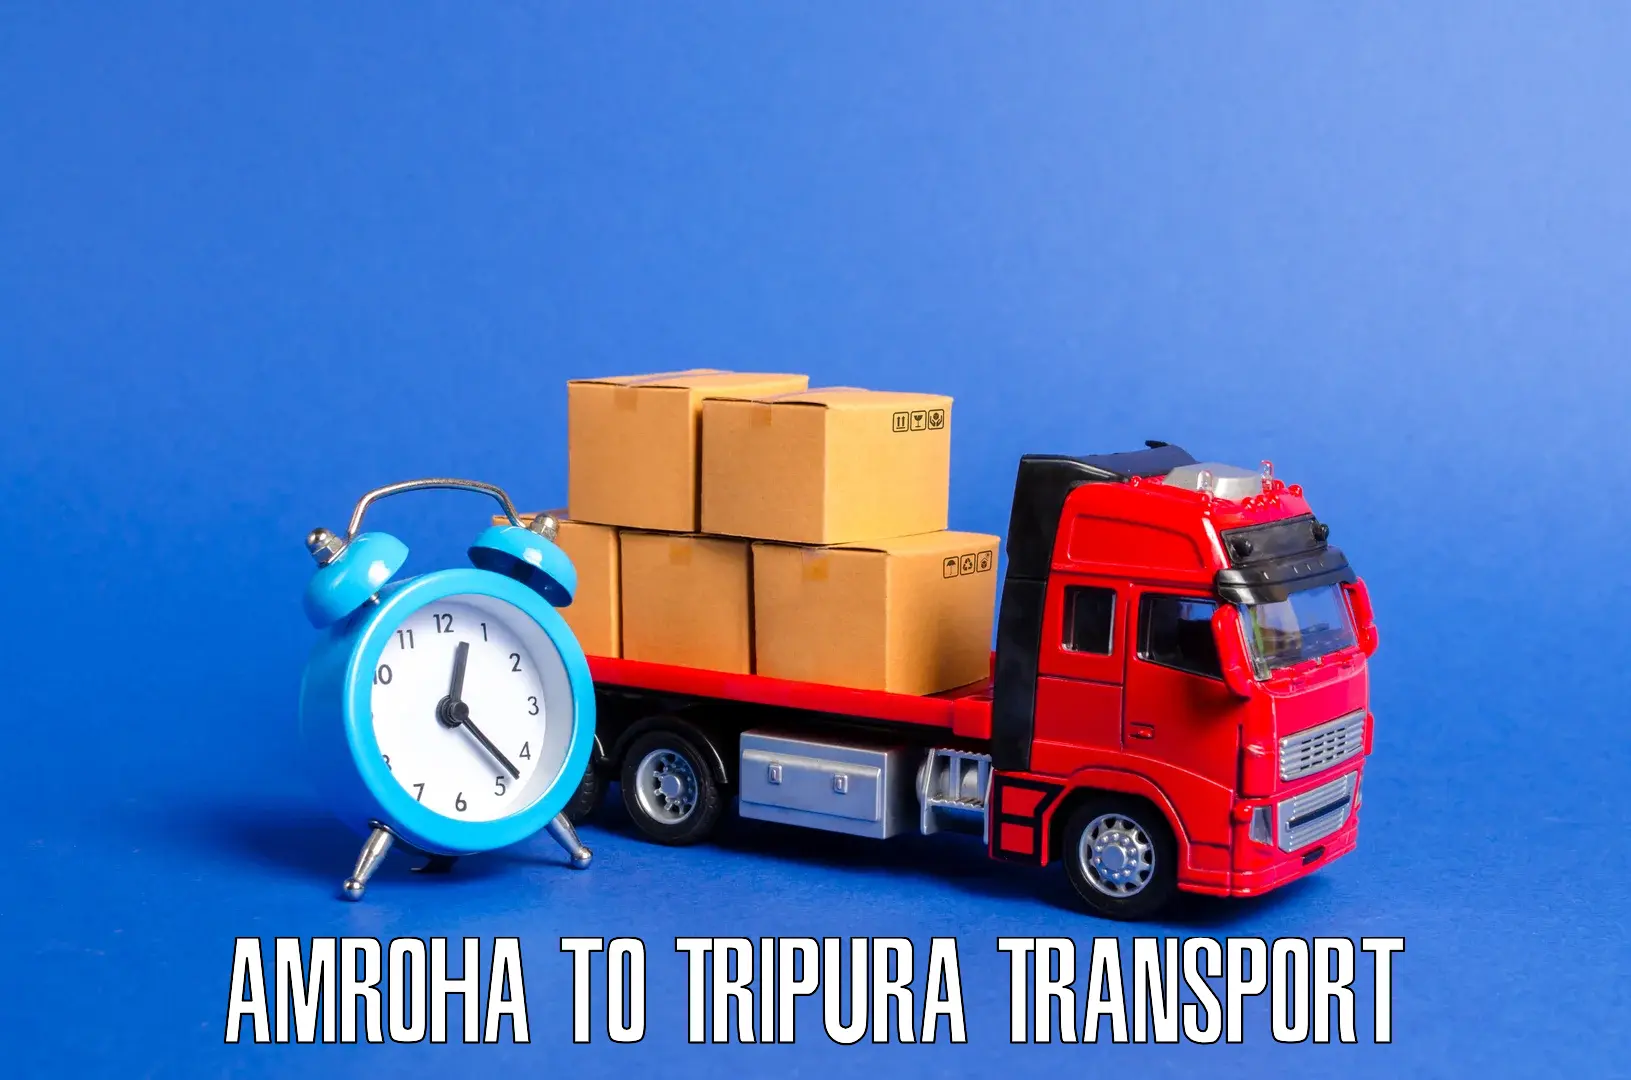 Pick up transport service Amroha to Manu Bazar